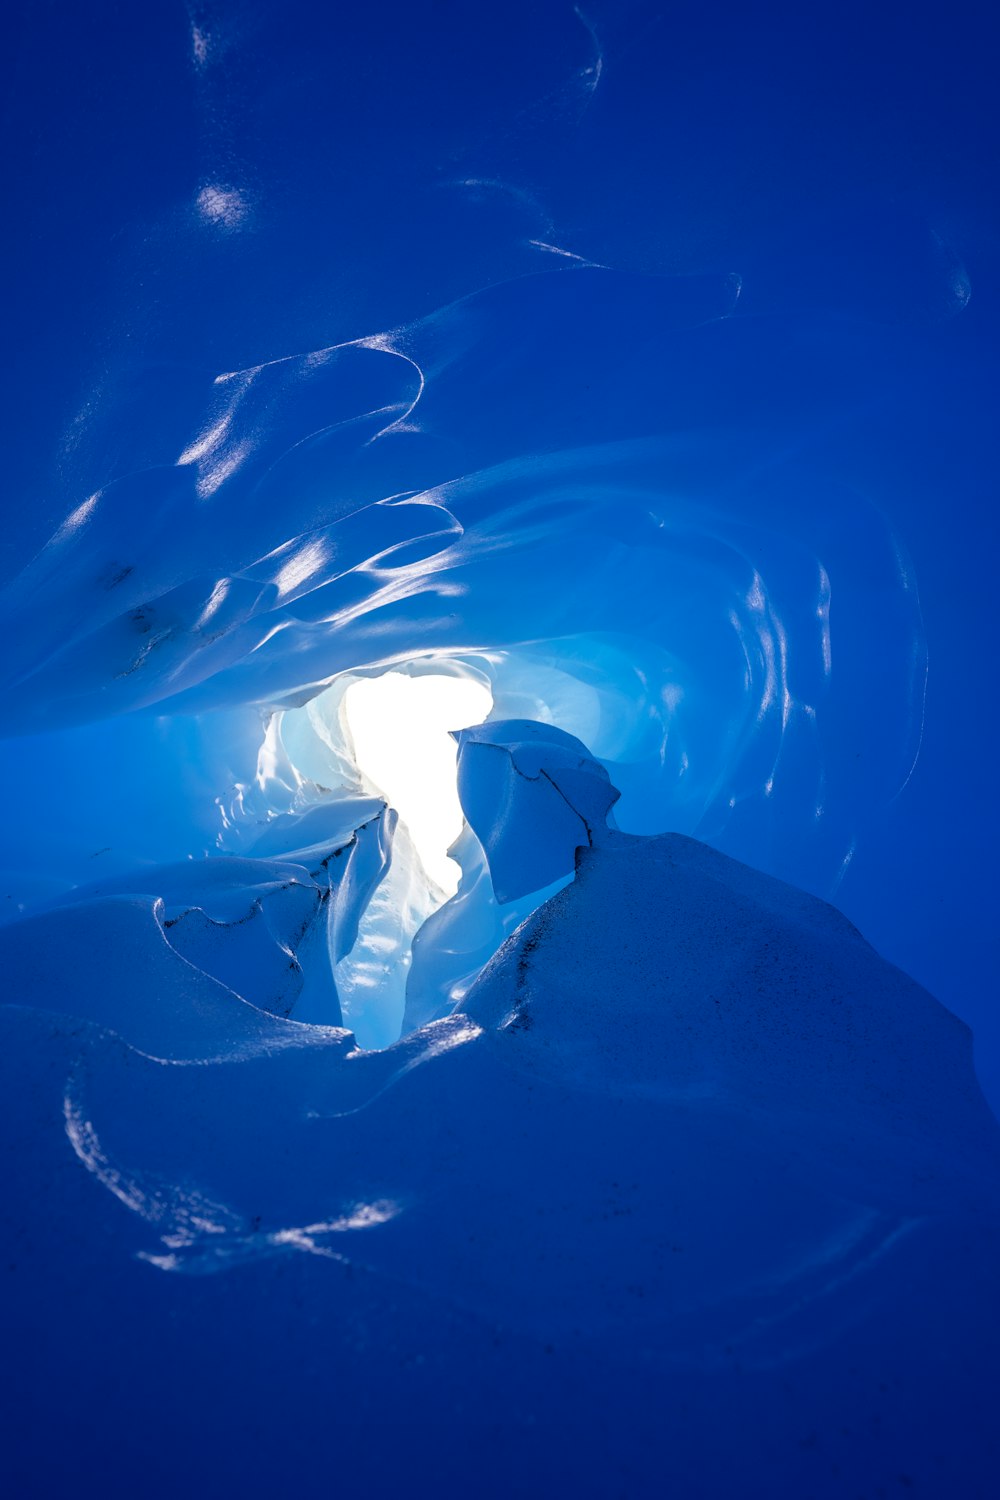 Una grande grotta di ghiaccio piena di acqua e neve